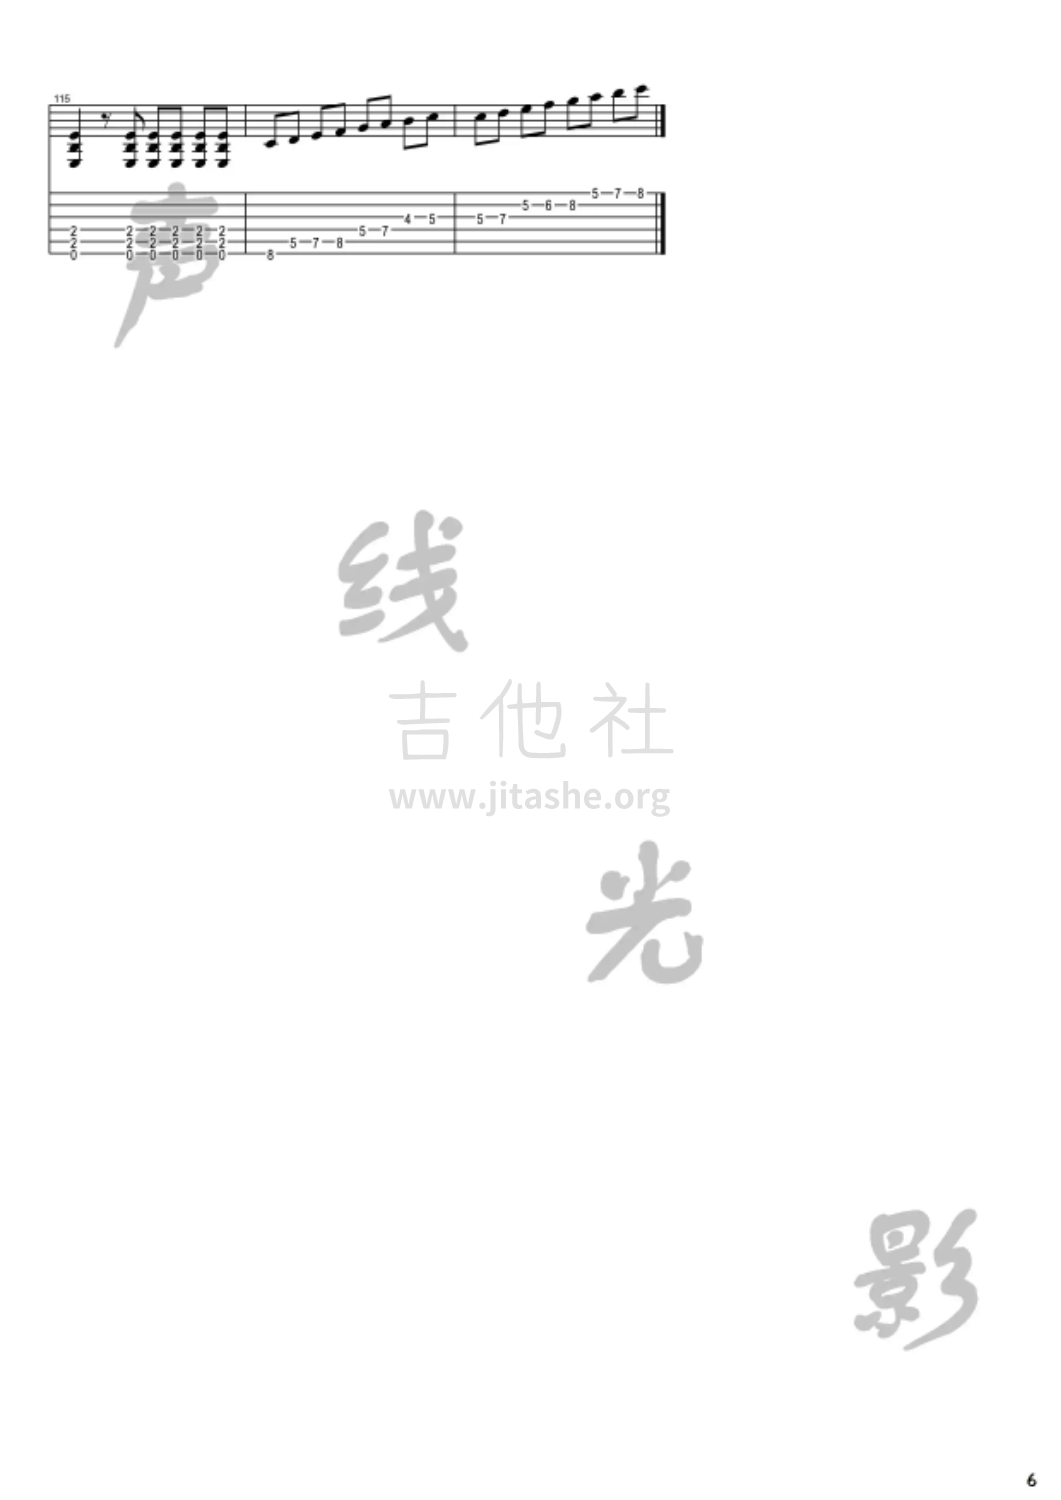 丁建国写的歌吉他谱(图片谱,电吉他)_原声带(OST;Original Soundtrack;电影)_6.png